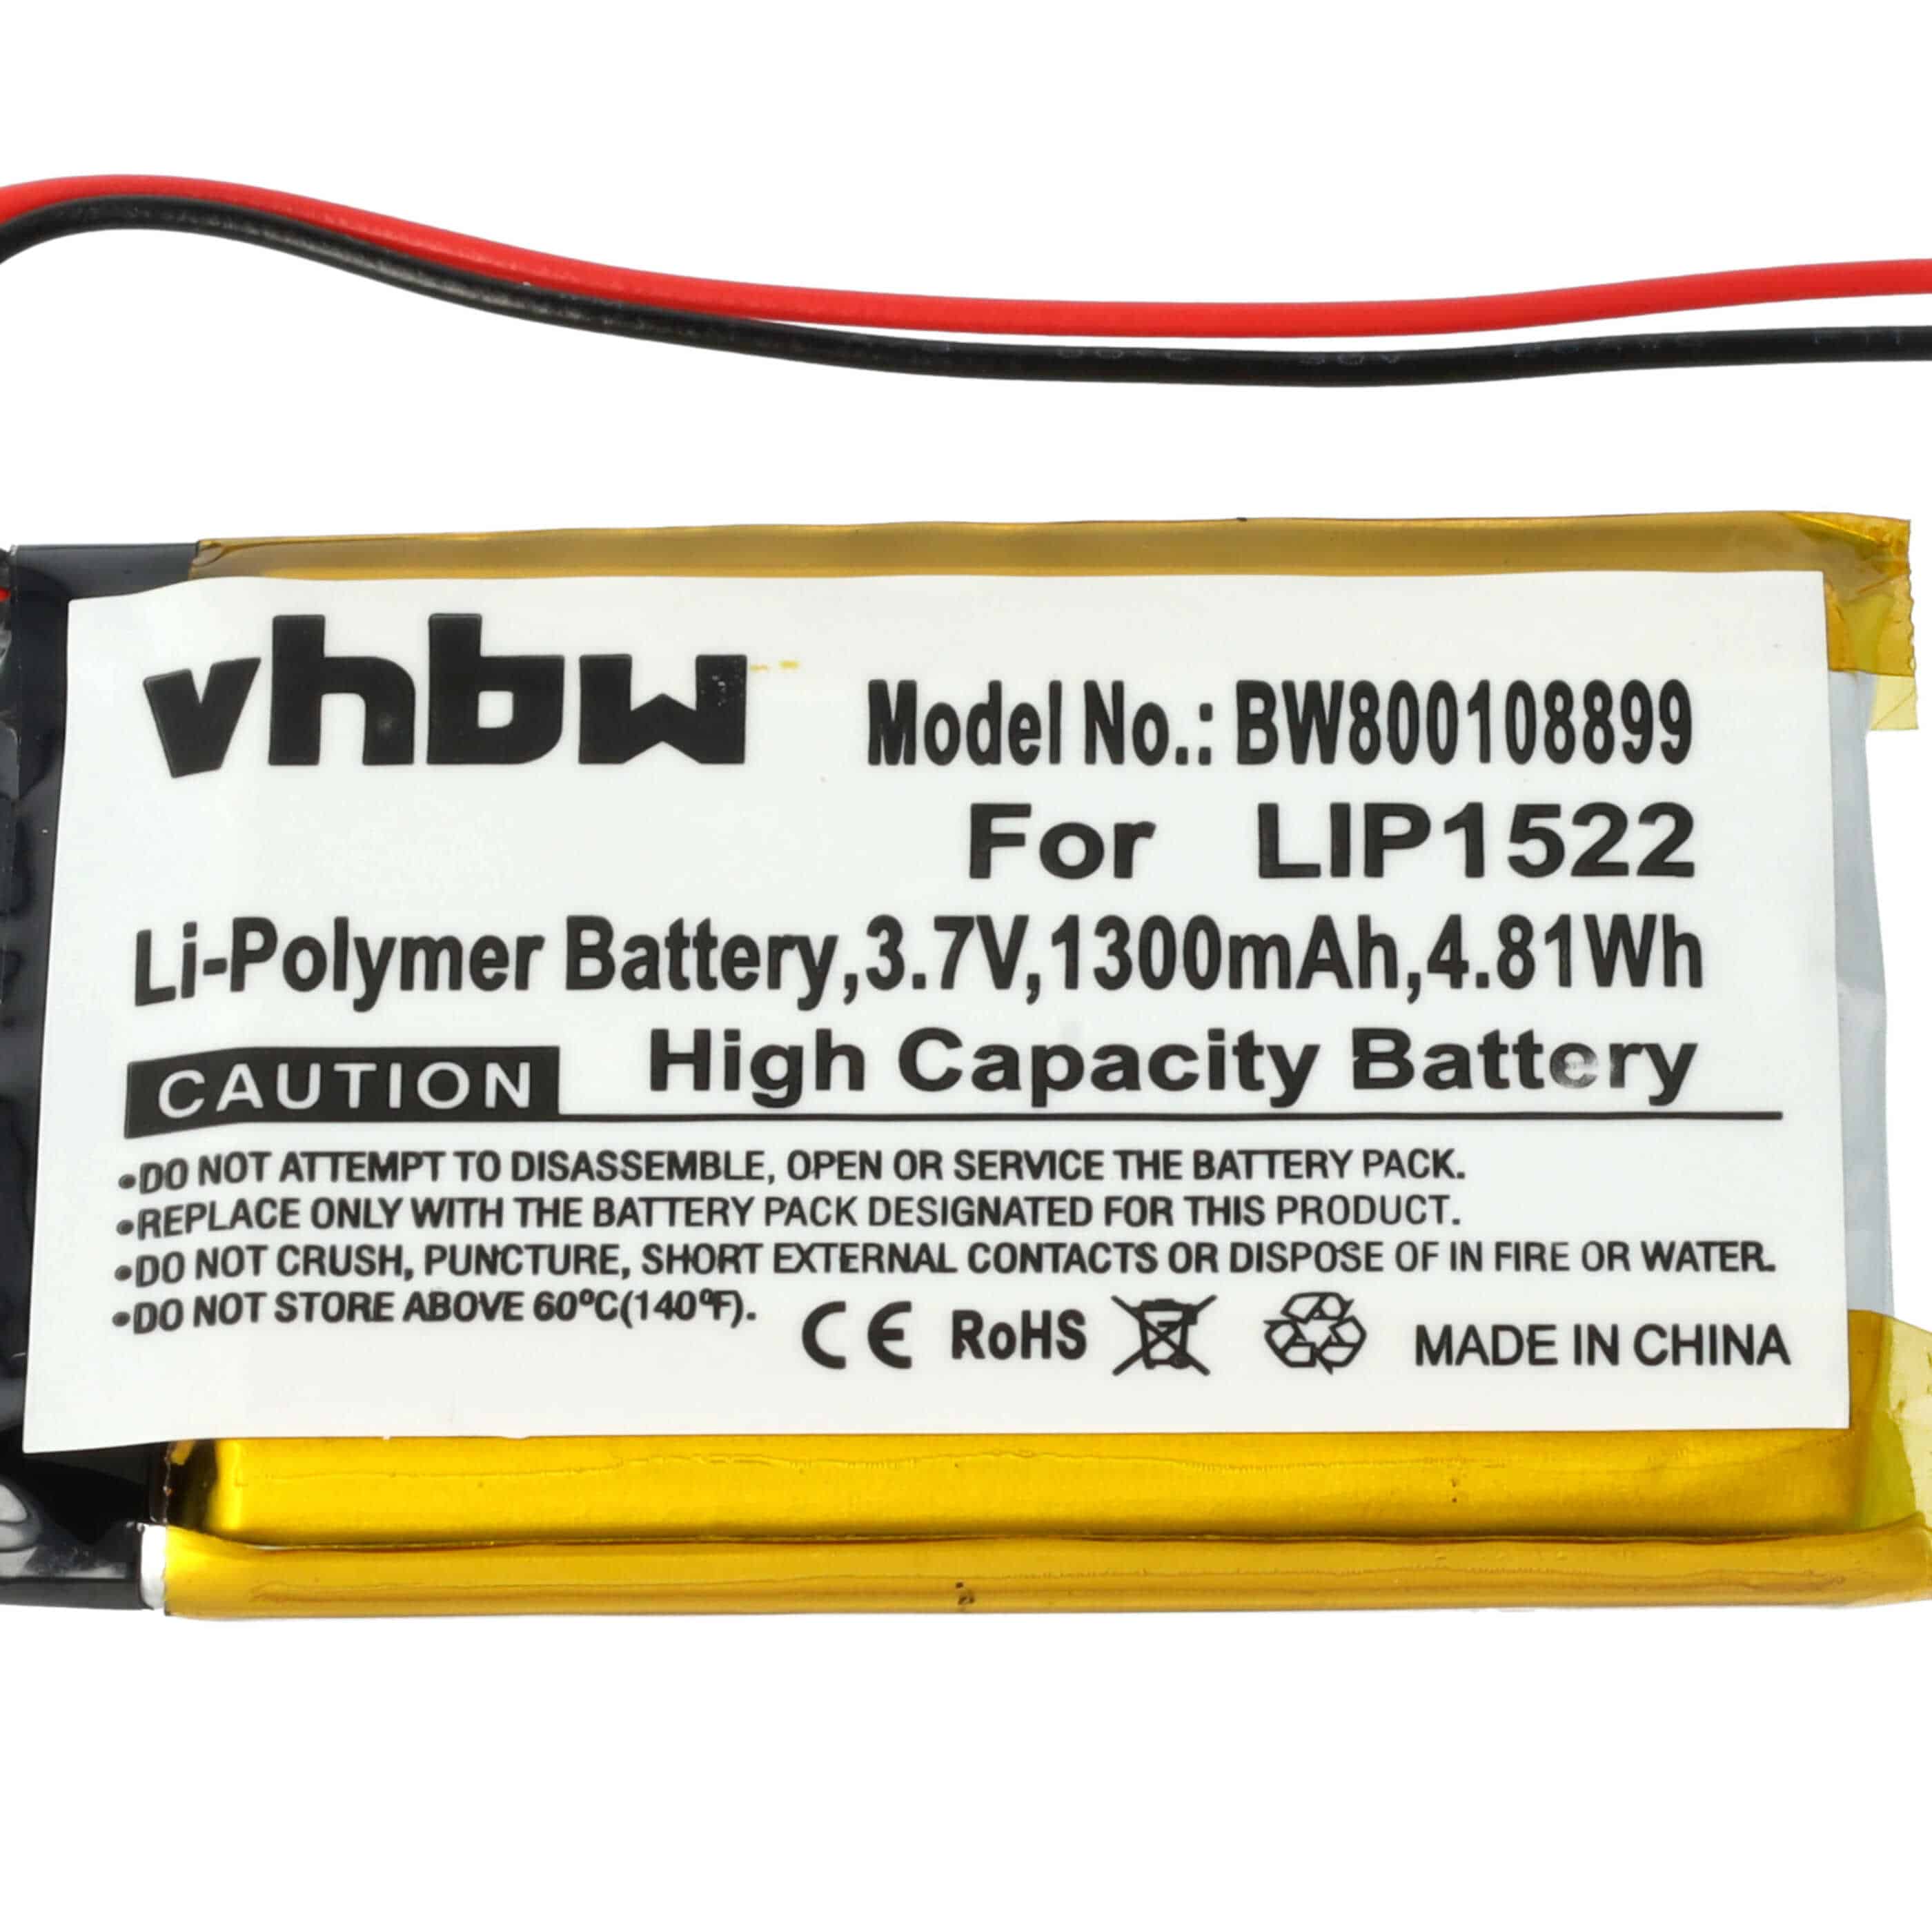 Batterie remplace Sony LIP1522, KCR1410 pour manette - 1300mAh 3,7V Li-ion